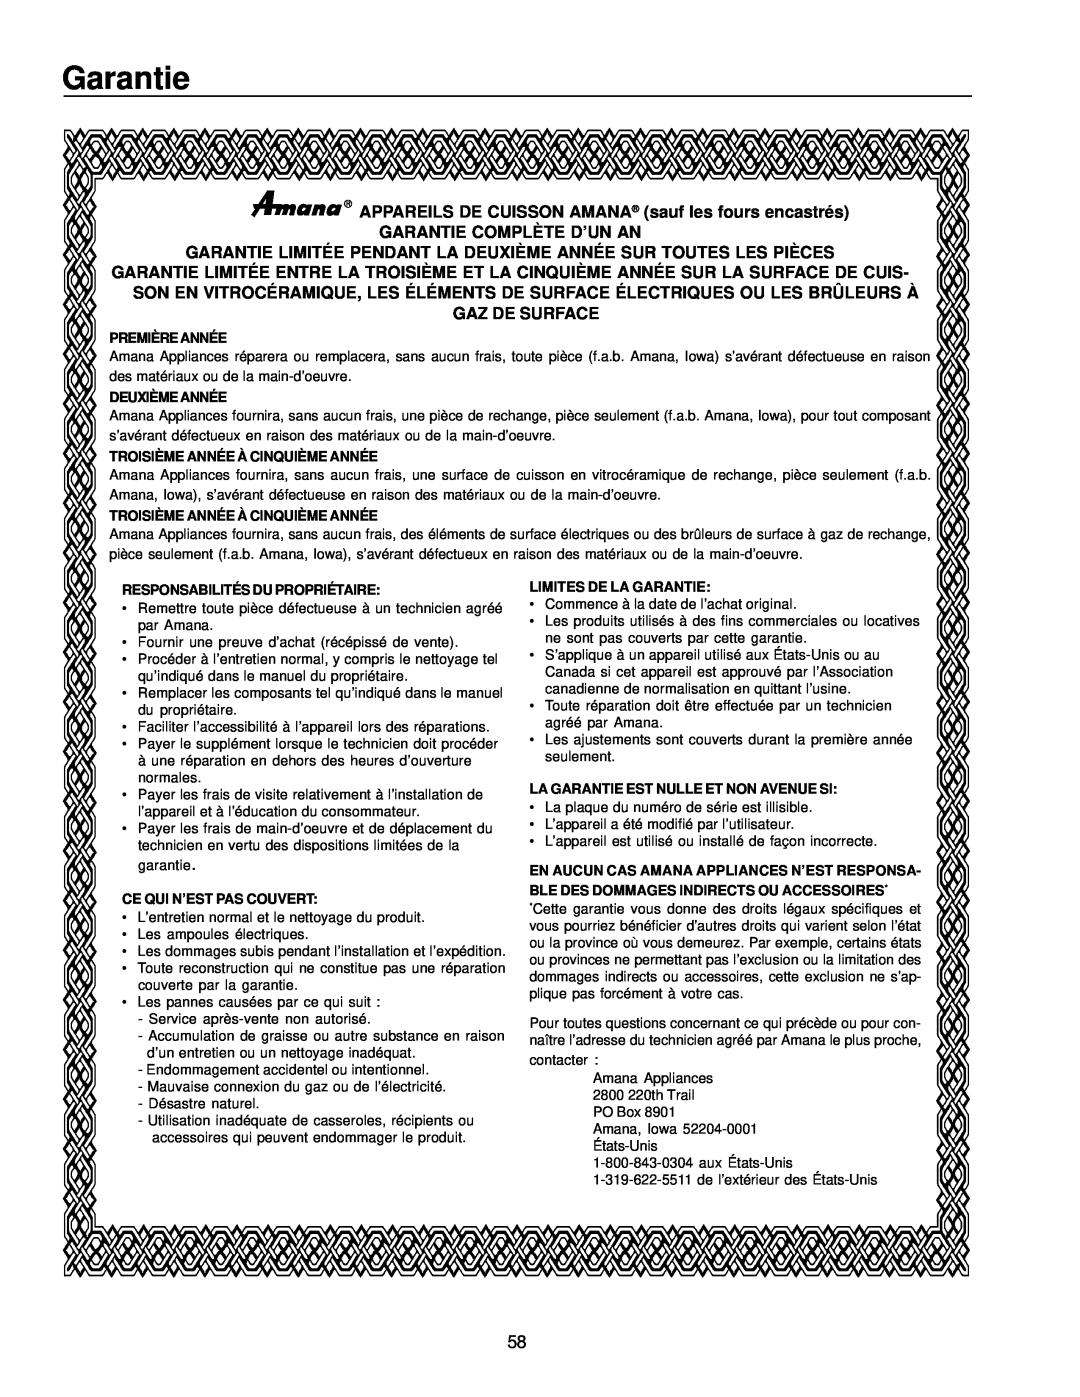 Amana ARG7302 manual APPAREILS DE CUISSON AMANA sauf les fours encastrés, Garantie Complète D’Un An, Gaz De Surface 